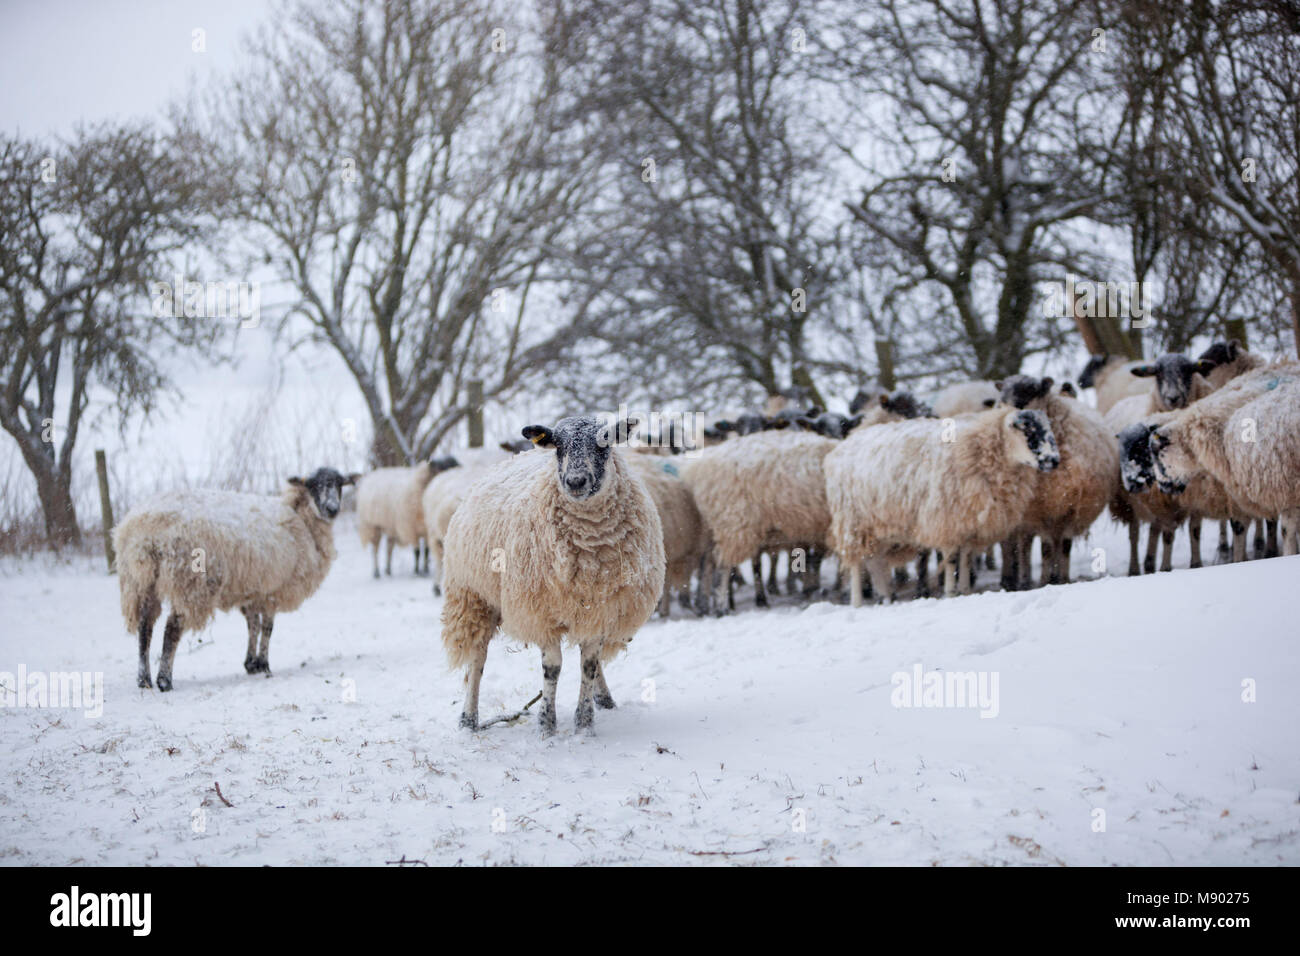 Weiße Schafe gepresst zusammen die Zuflucht von einem Schneesturm, Chipping Campden, die Cotswolds, Gloucestershire, England, Vereinigtes Königreich, Europa Stockfoto